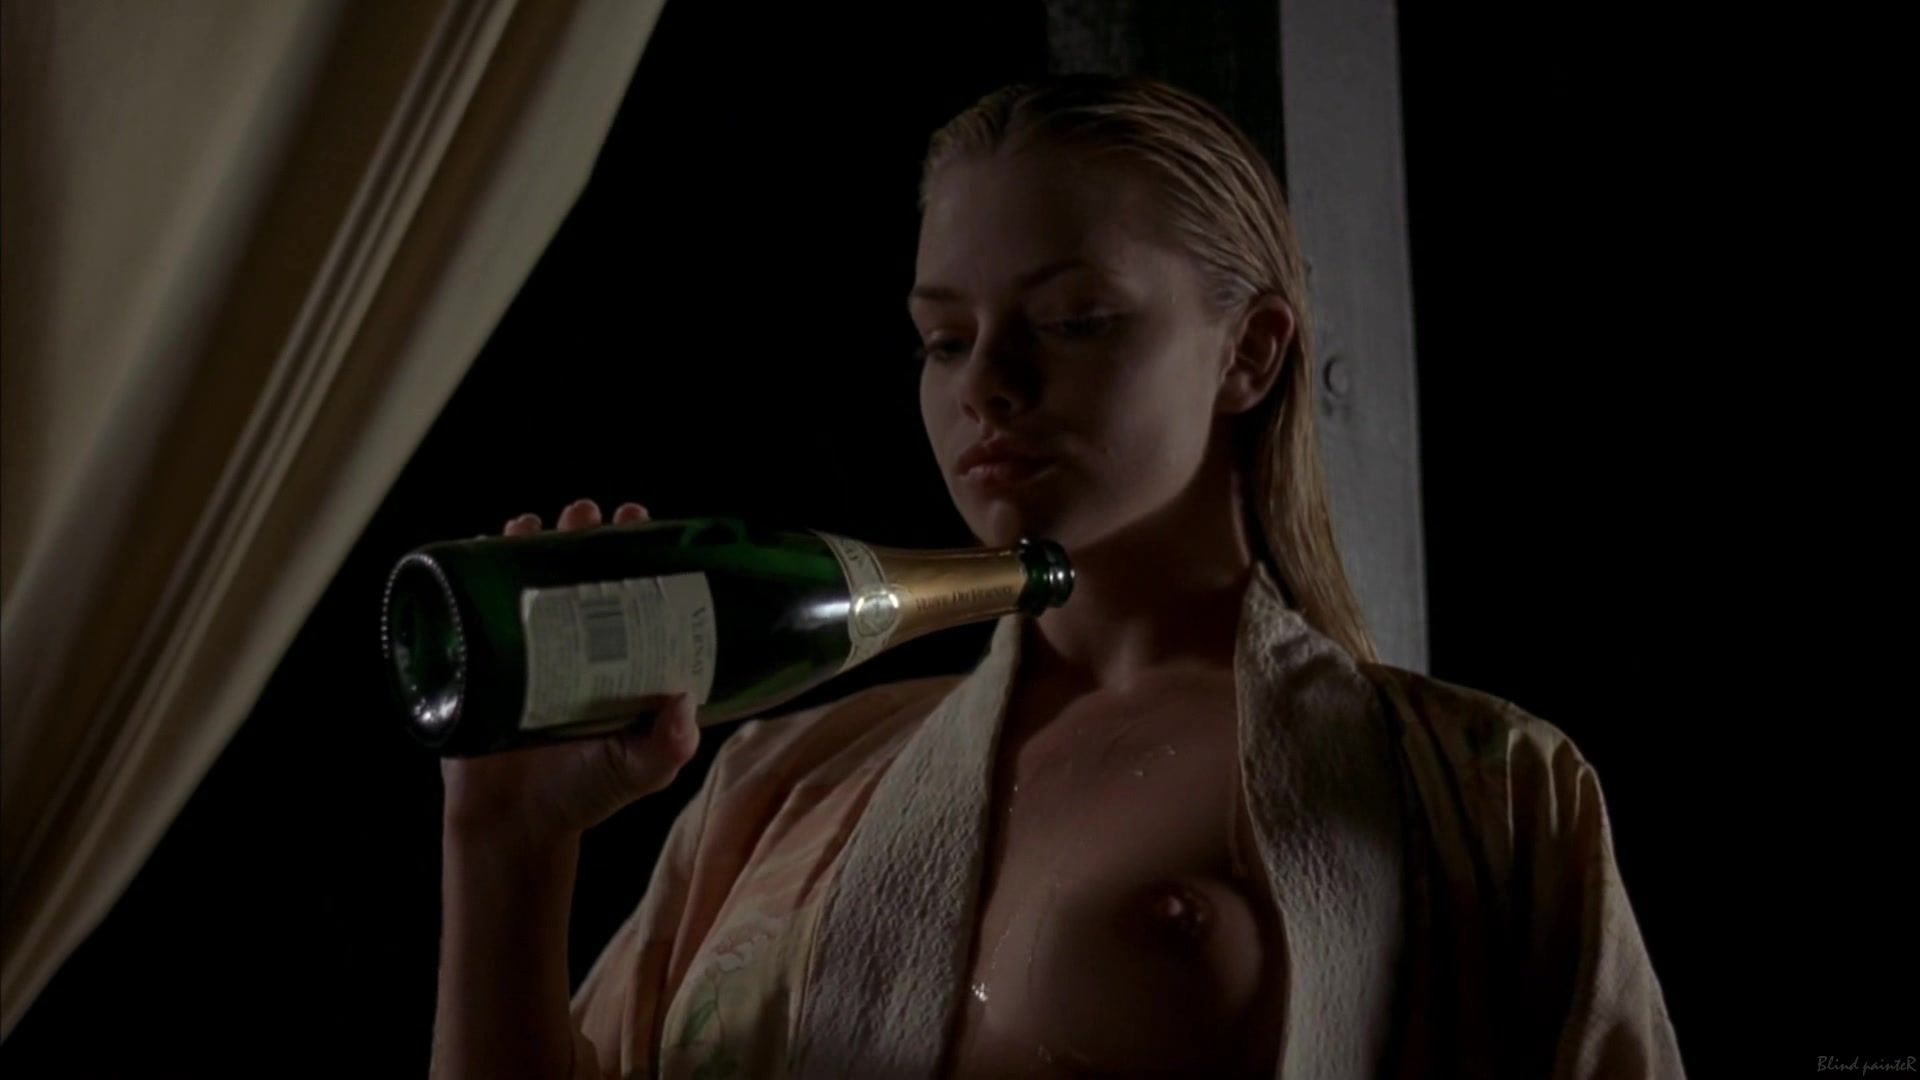 VEporn Jaime Pressly nude - Poison Ivy 3 (1997) Ametur Porn - 1